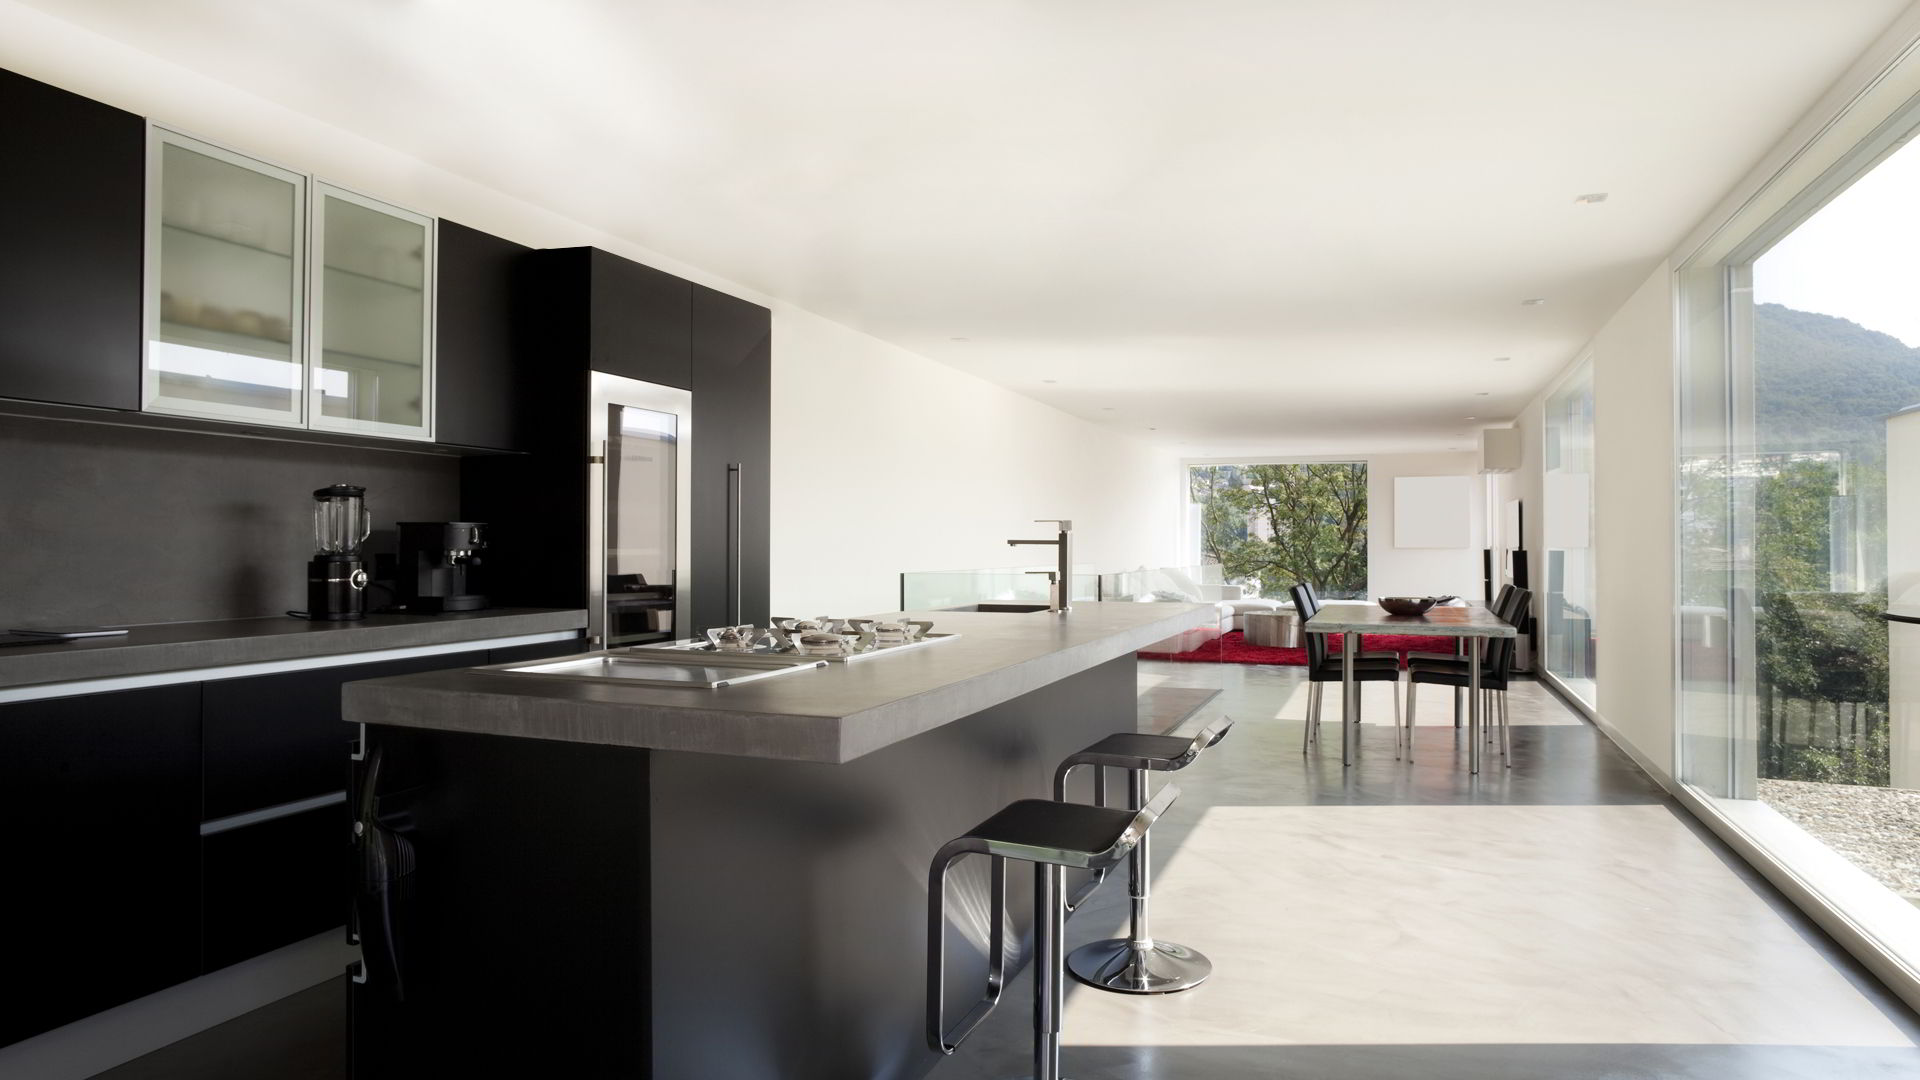 Kuchyň integrovaná do obývacího pokoje s podlahou z mikrocementu